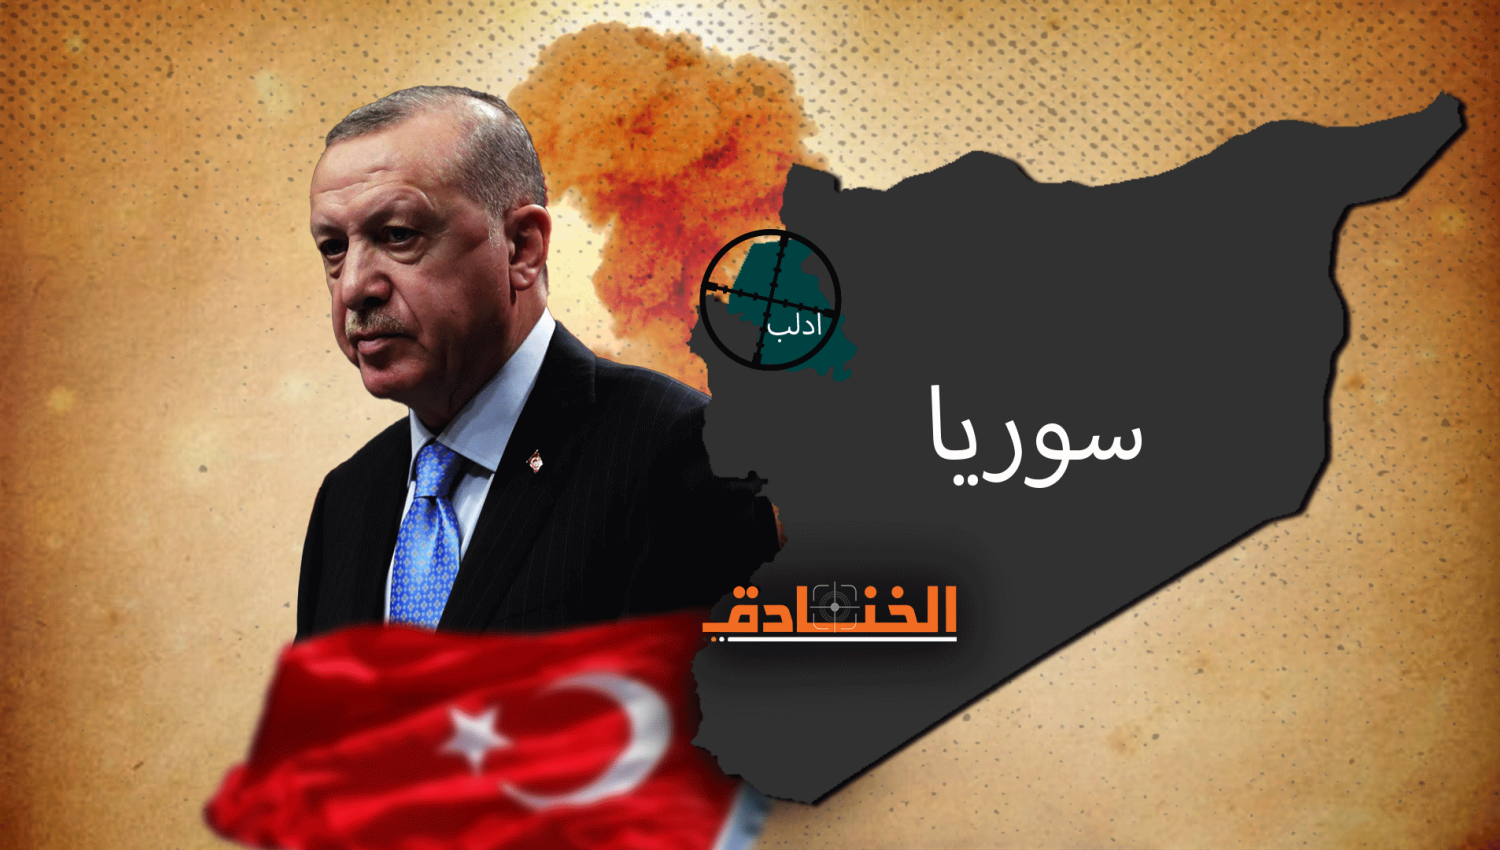 "فيلق الشام" في إدلب تحت النار: رسالة روسية الى تركيا؟!